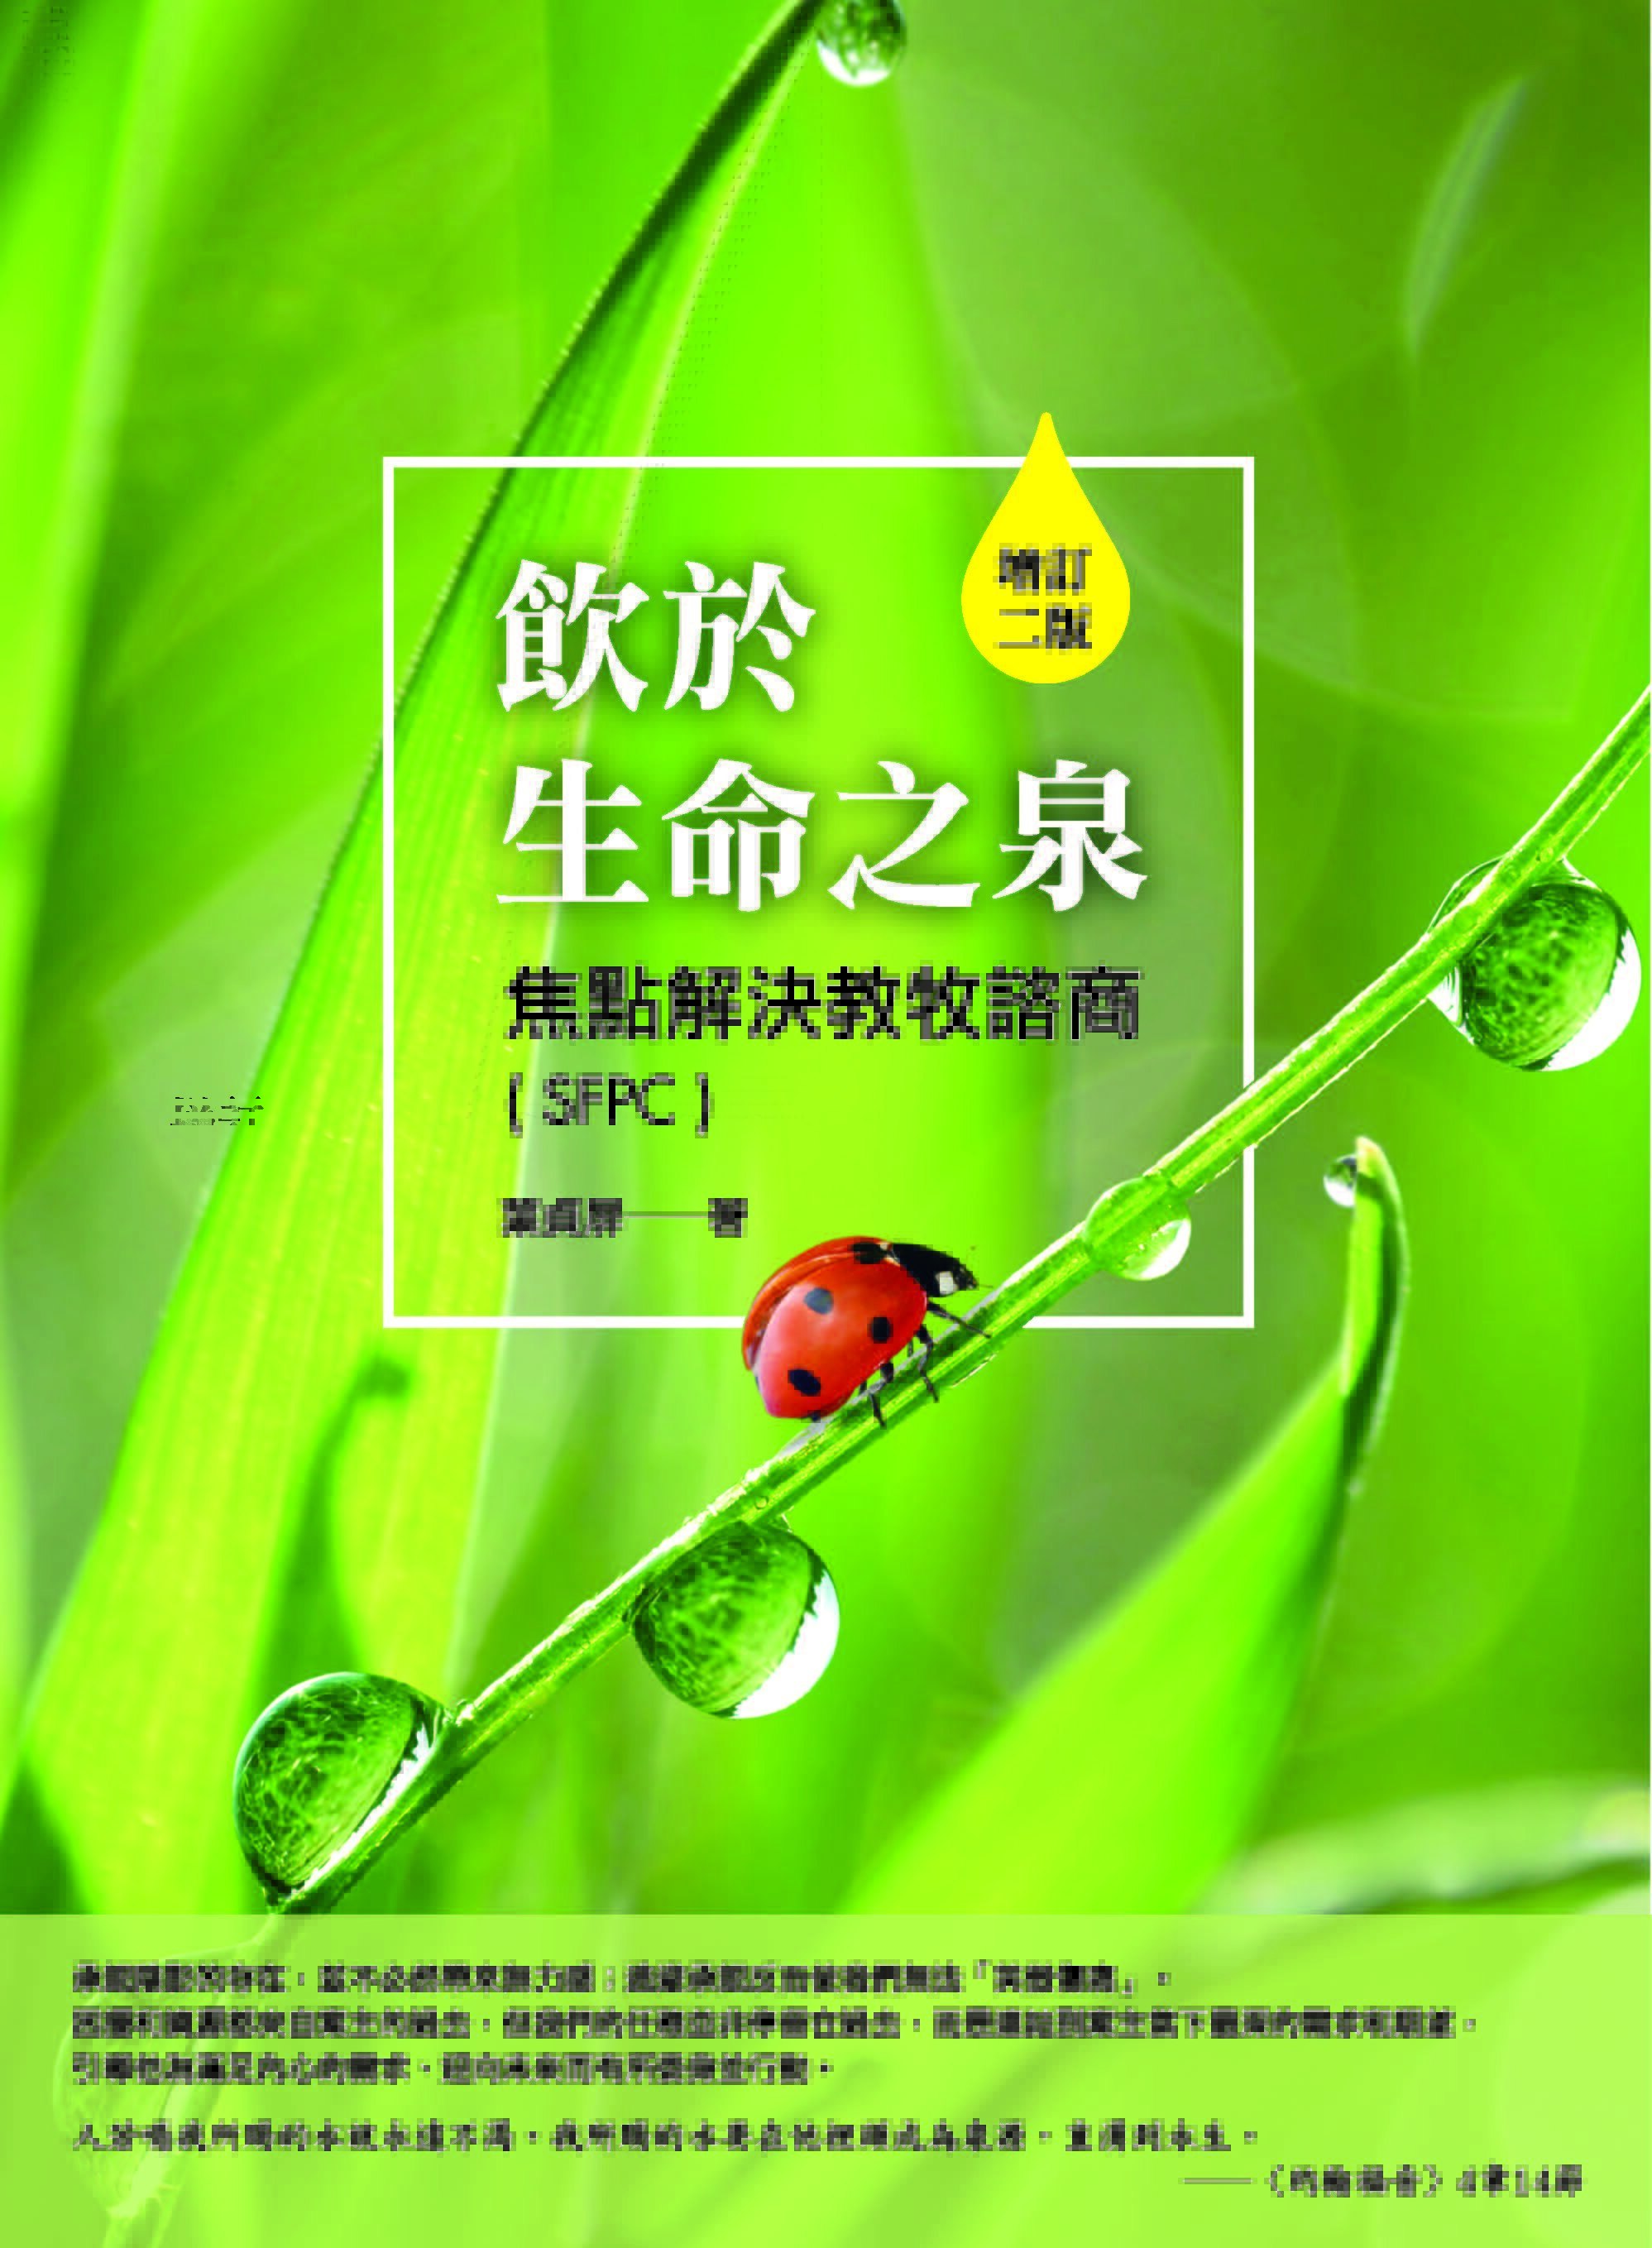 飲於生命之泉──焦點解決教牧諮商(SFPC)（繁體）Drinking from the Fountain of Life: Solution Focus Pastoral Counselor (SFPC) (Traditional Chinese)